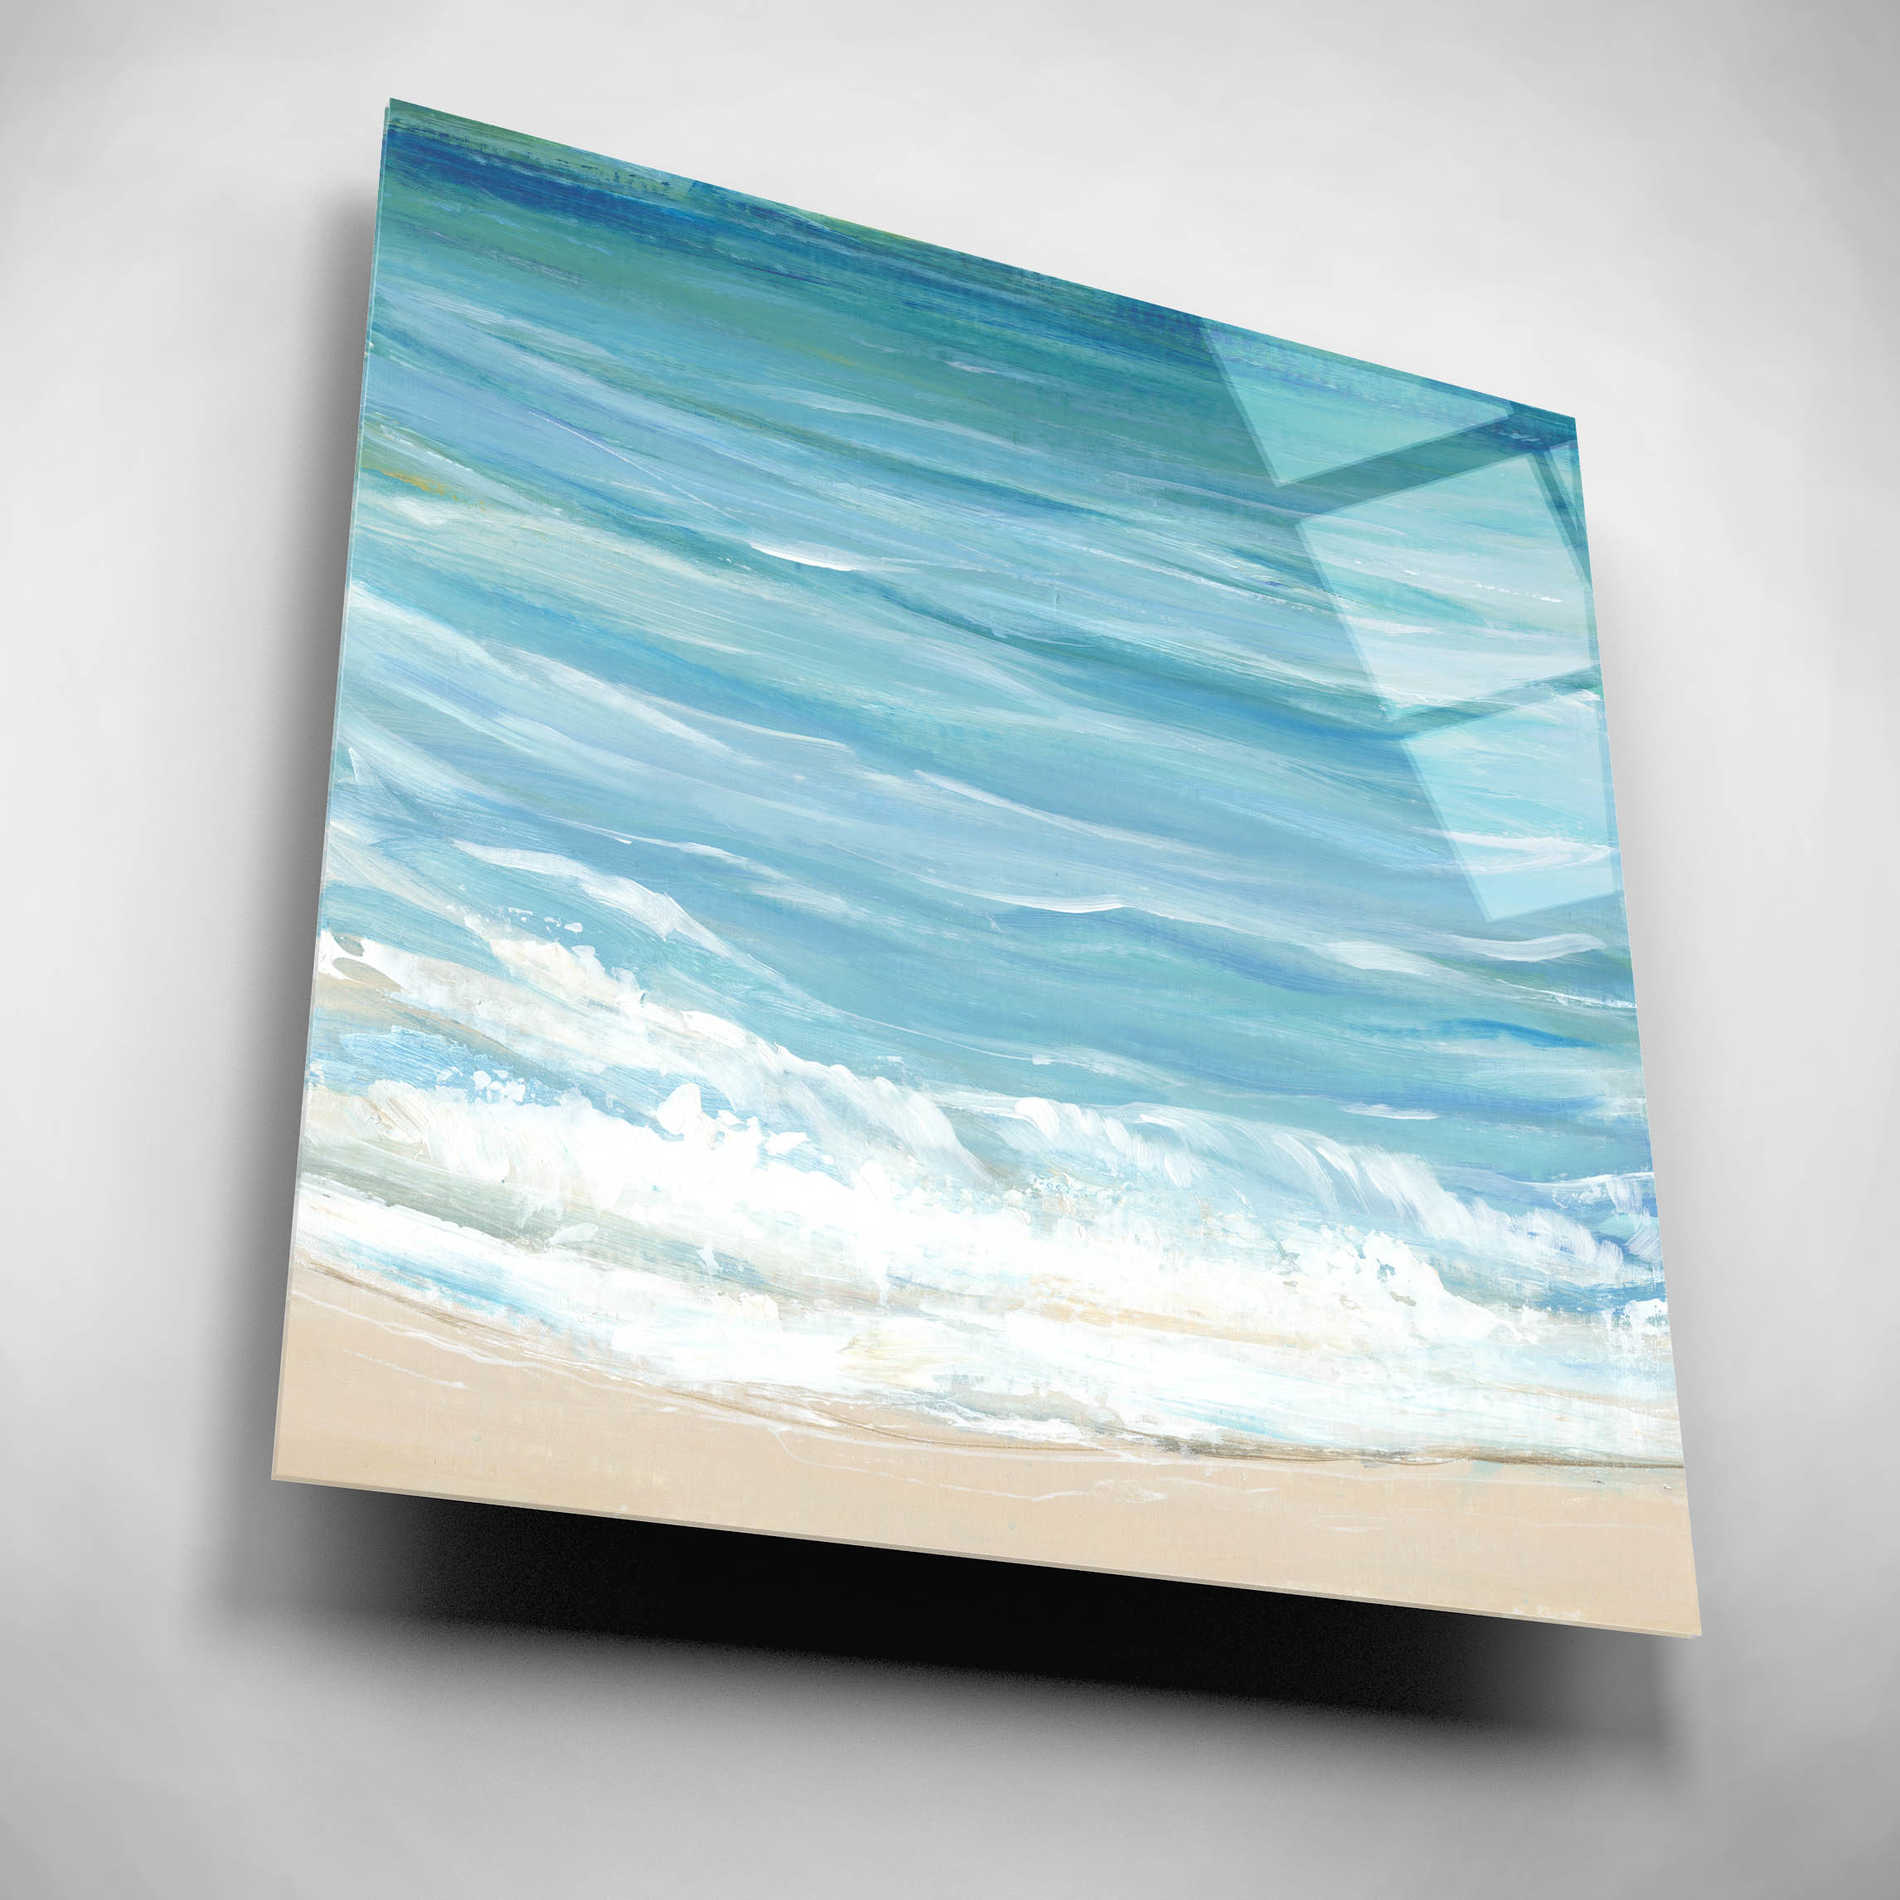 Epic Art 'Sea Breeze Coast I' by Tim O'Toole, Acrylic Glass Wall Art,12x12